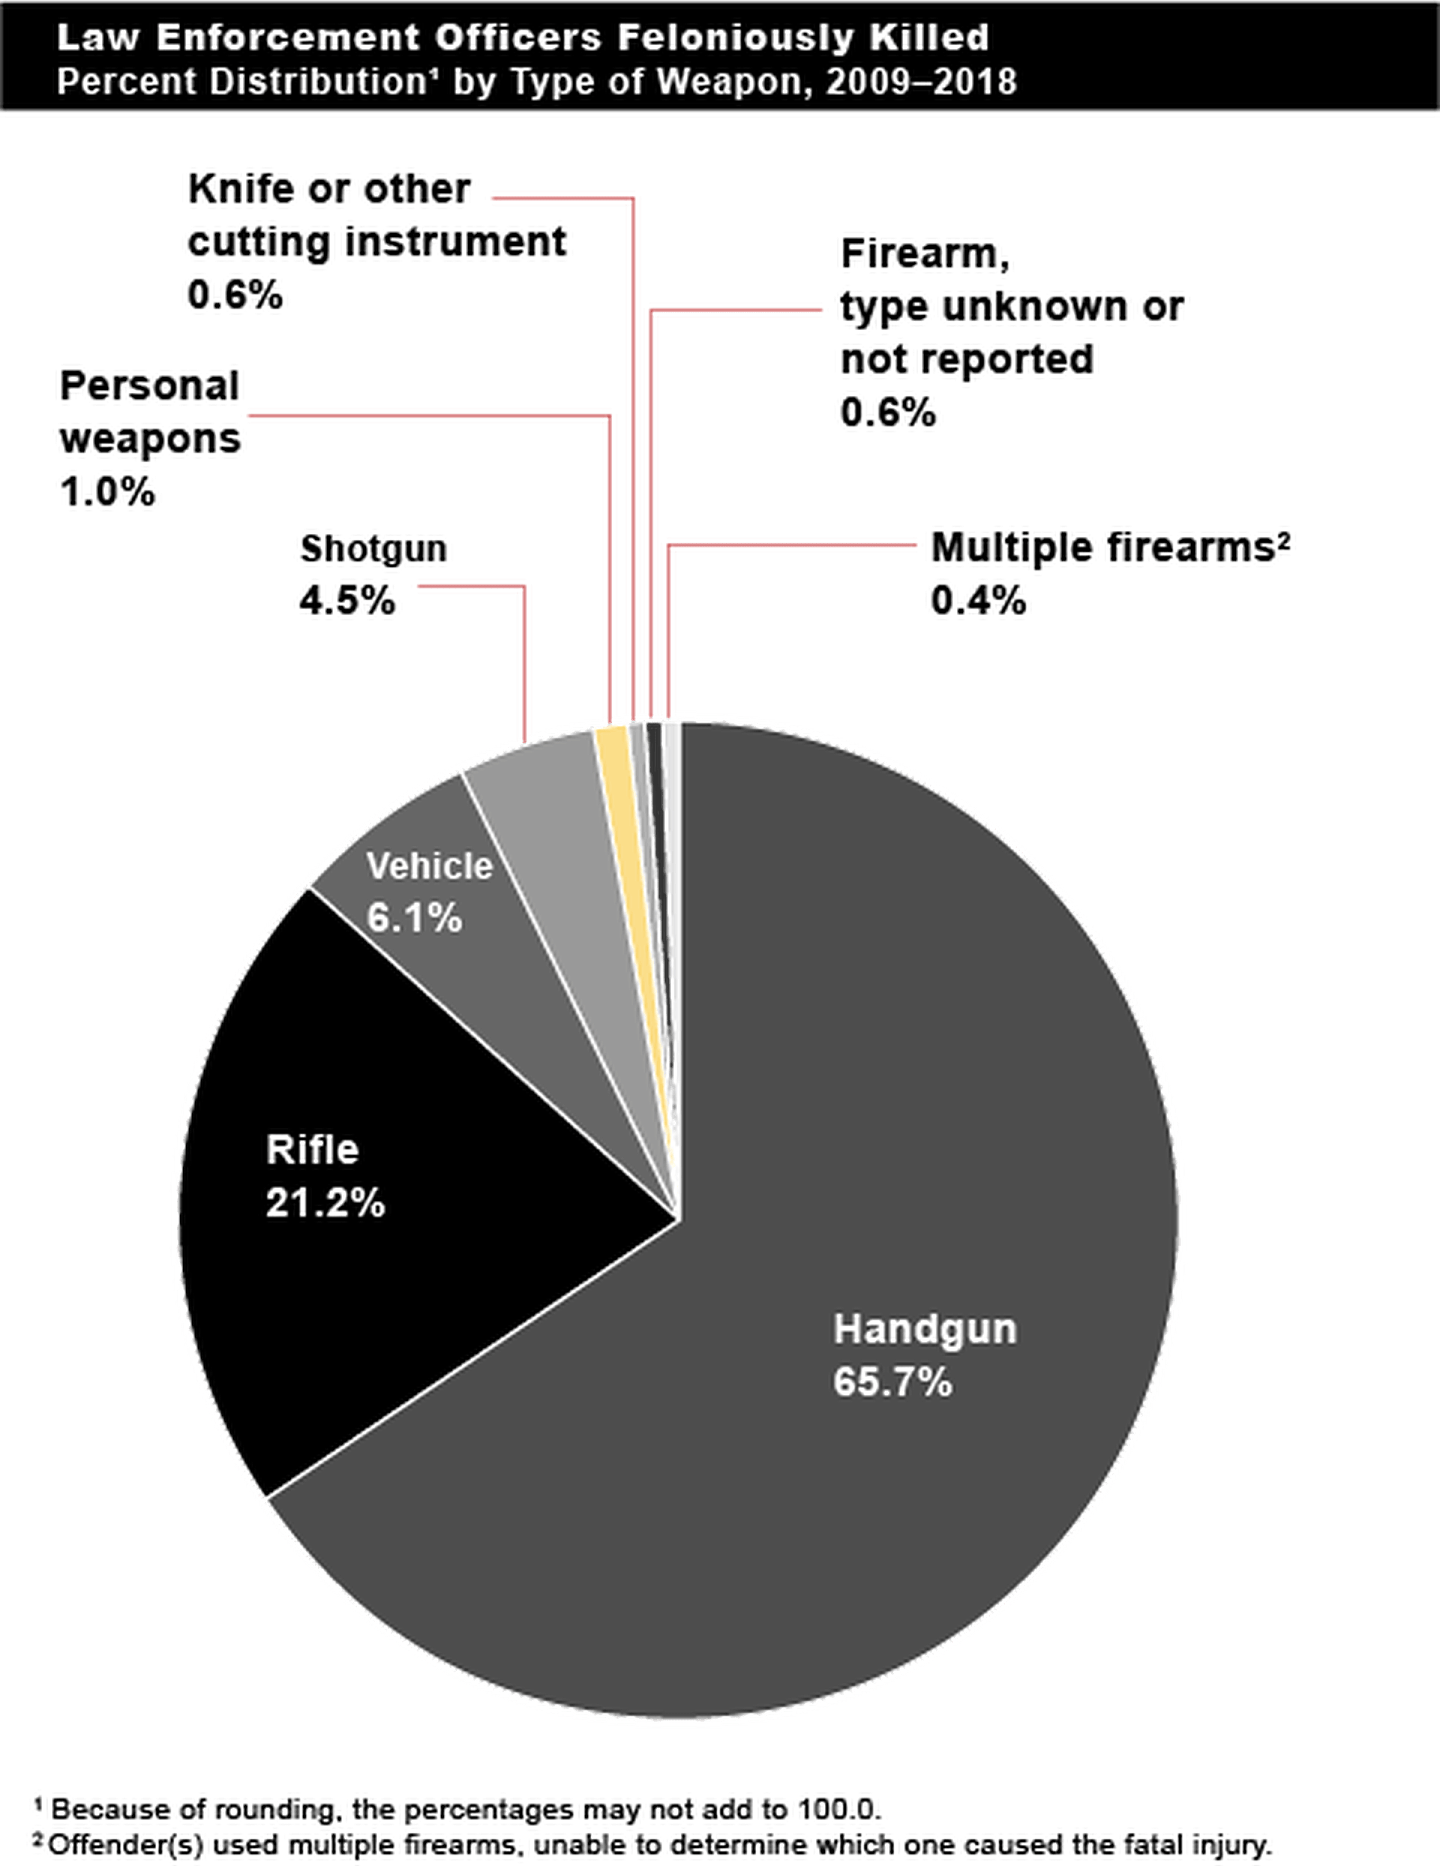 饼状图提供2009年至2018年用于杀害执法人员的武器类型的百分比分布，枪械占92%以上。 (联邦调查局)